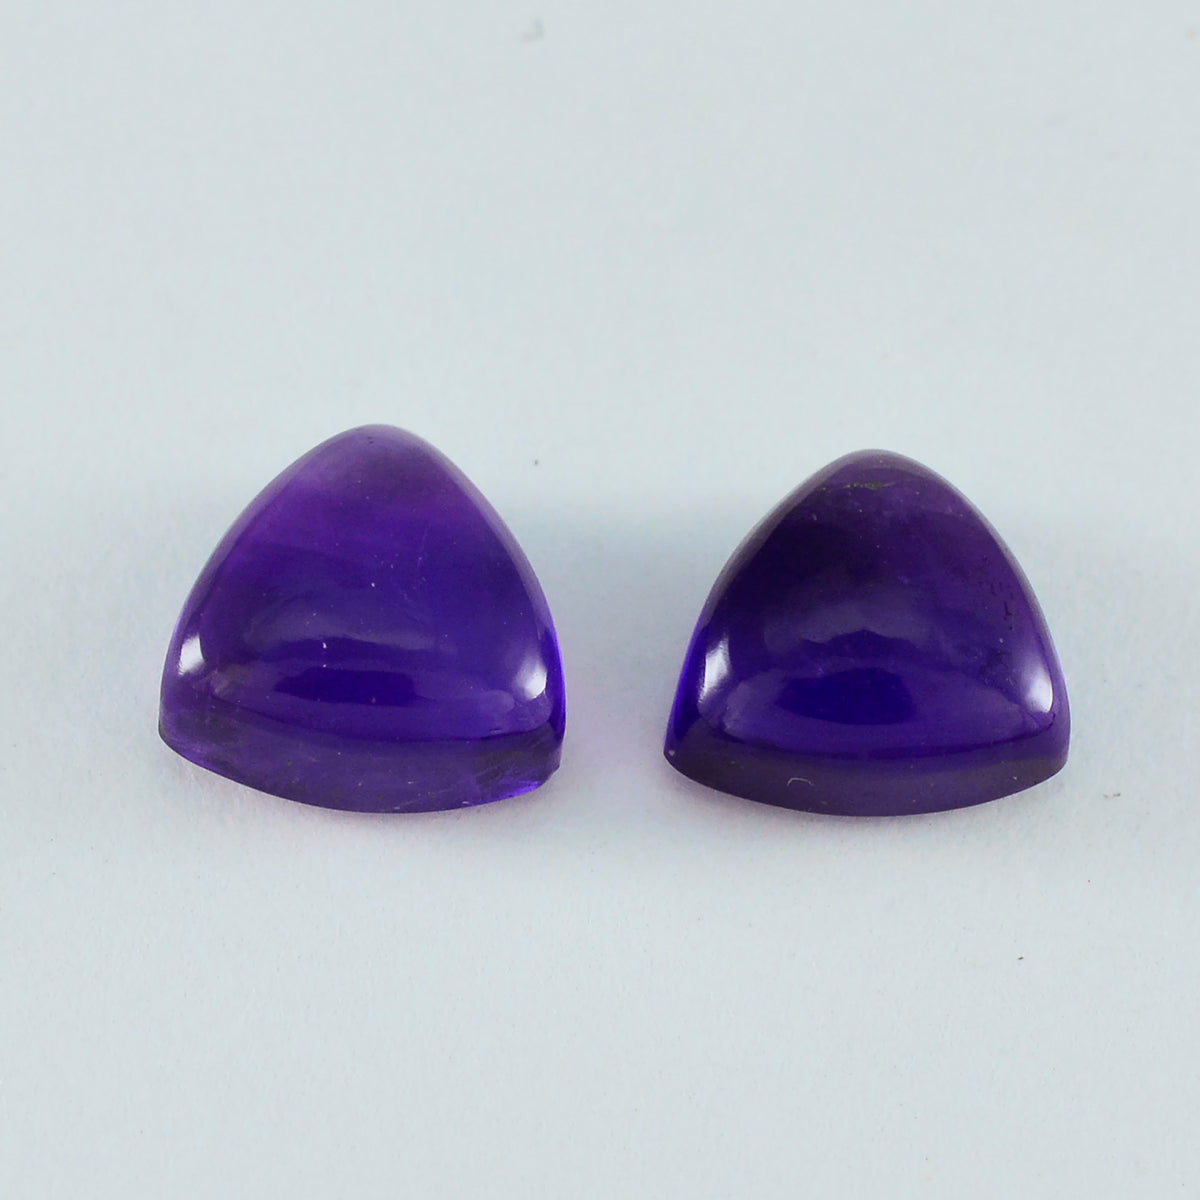 Riyogems 1 Stück violetter Amethyst-Cabochon, 12 x 12 mm, Trillionenform, Edelstein in Schönheitsqualität